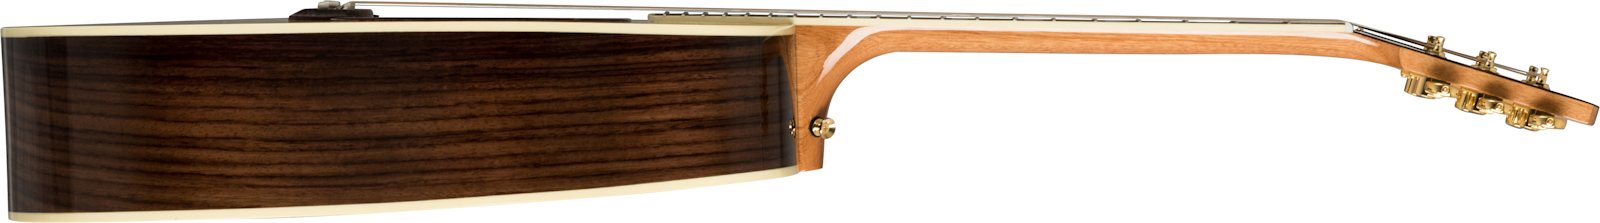 Gibson Songwriter Standard Rosewood 2019 Epicea Palissandre Rw - Antique Natural - Elektro-akoestische gitaar - Variation 2